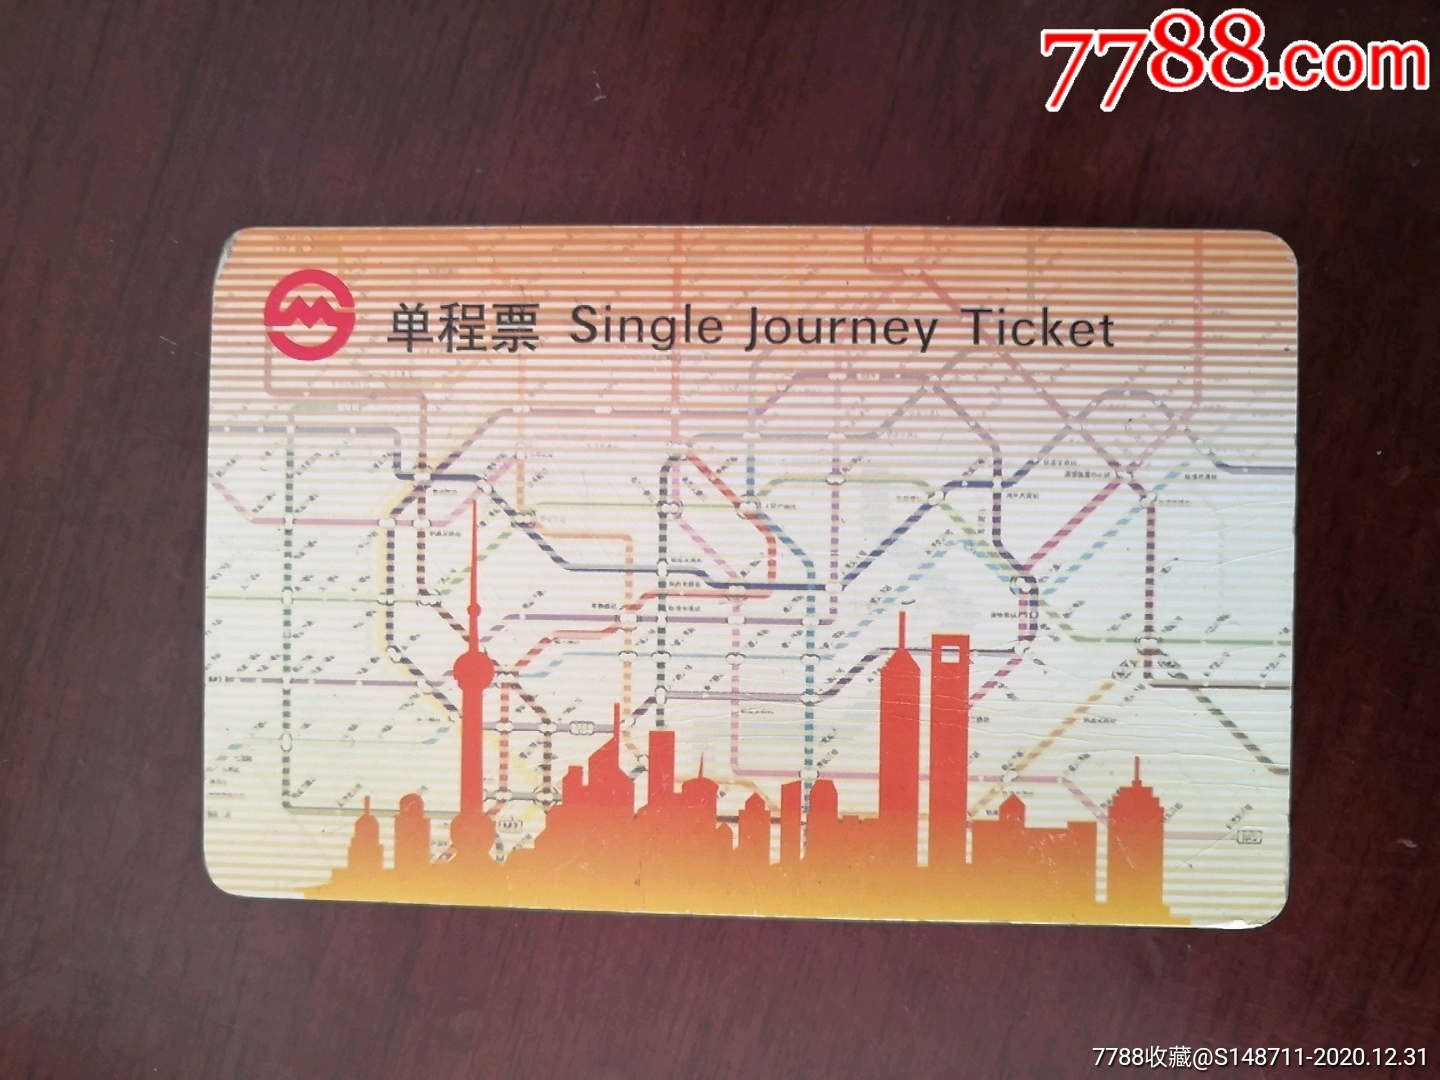 上海地铁单程票pd131104